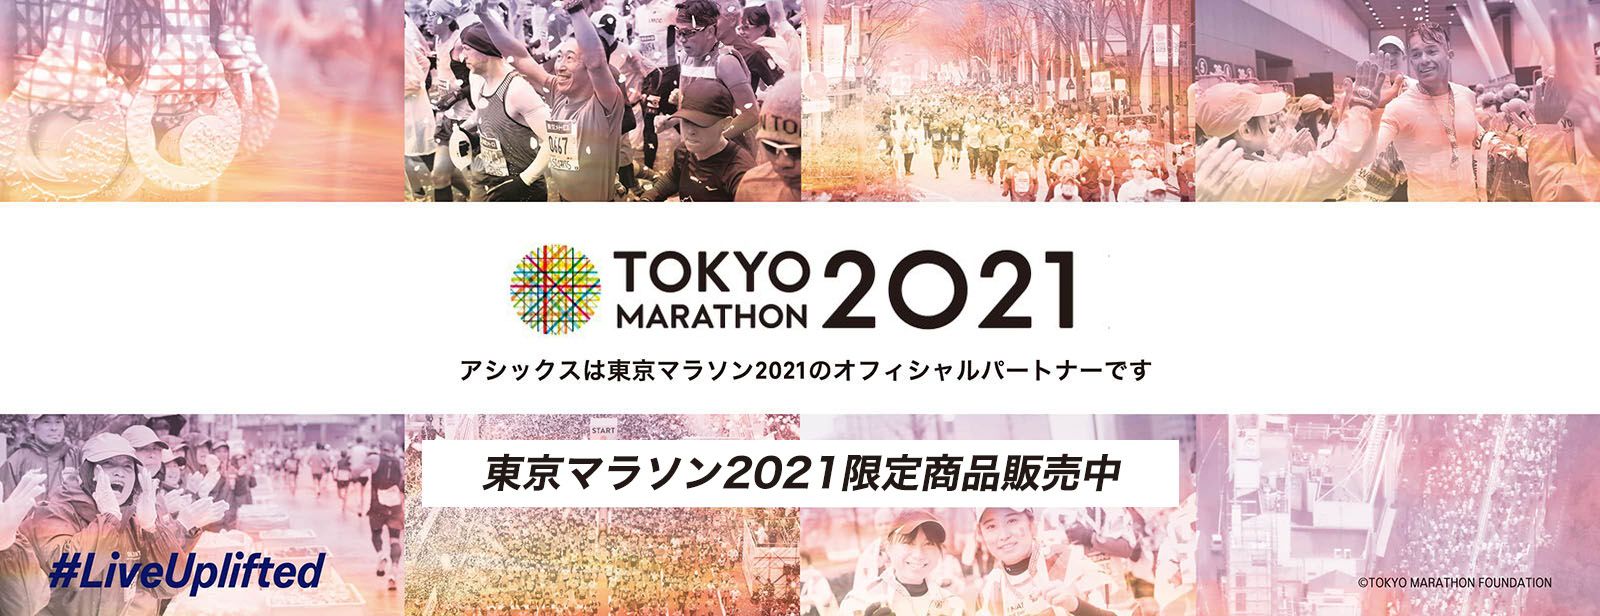 ライブ 配信 マラソン 東京 東京マラソン2021